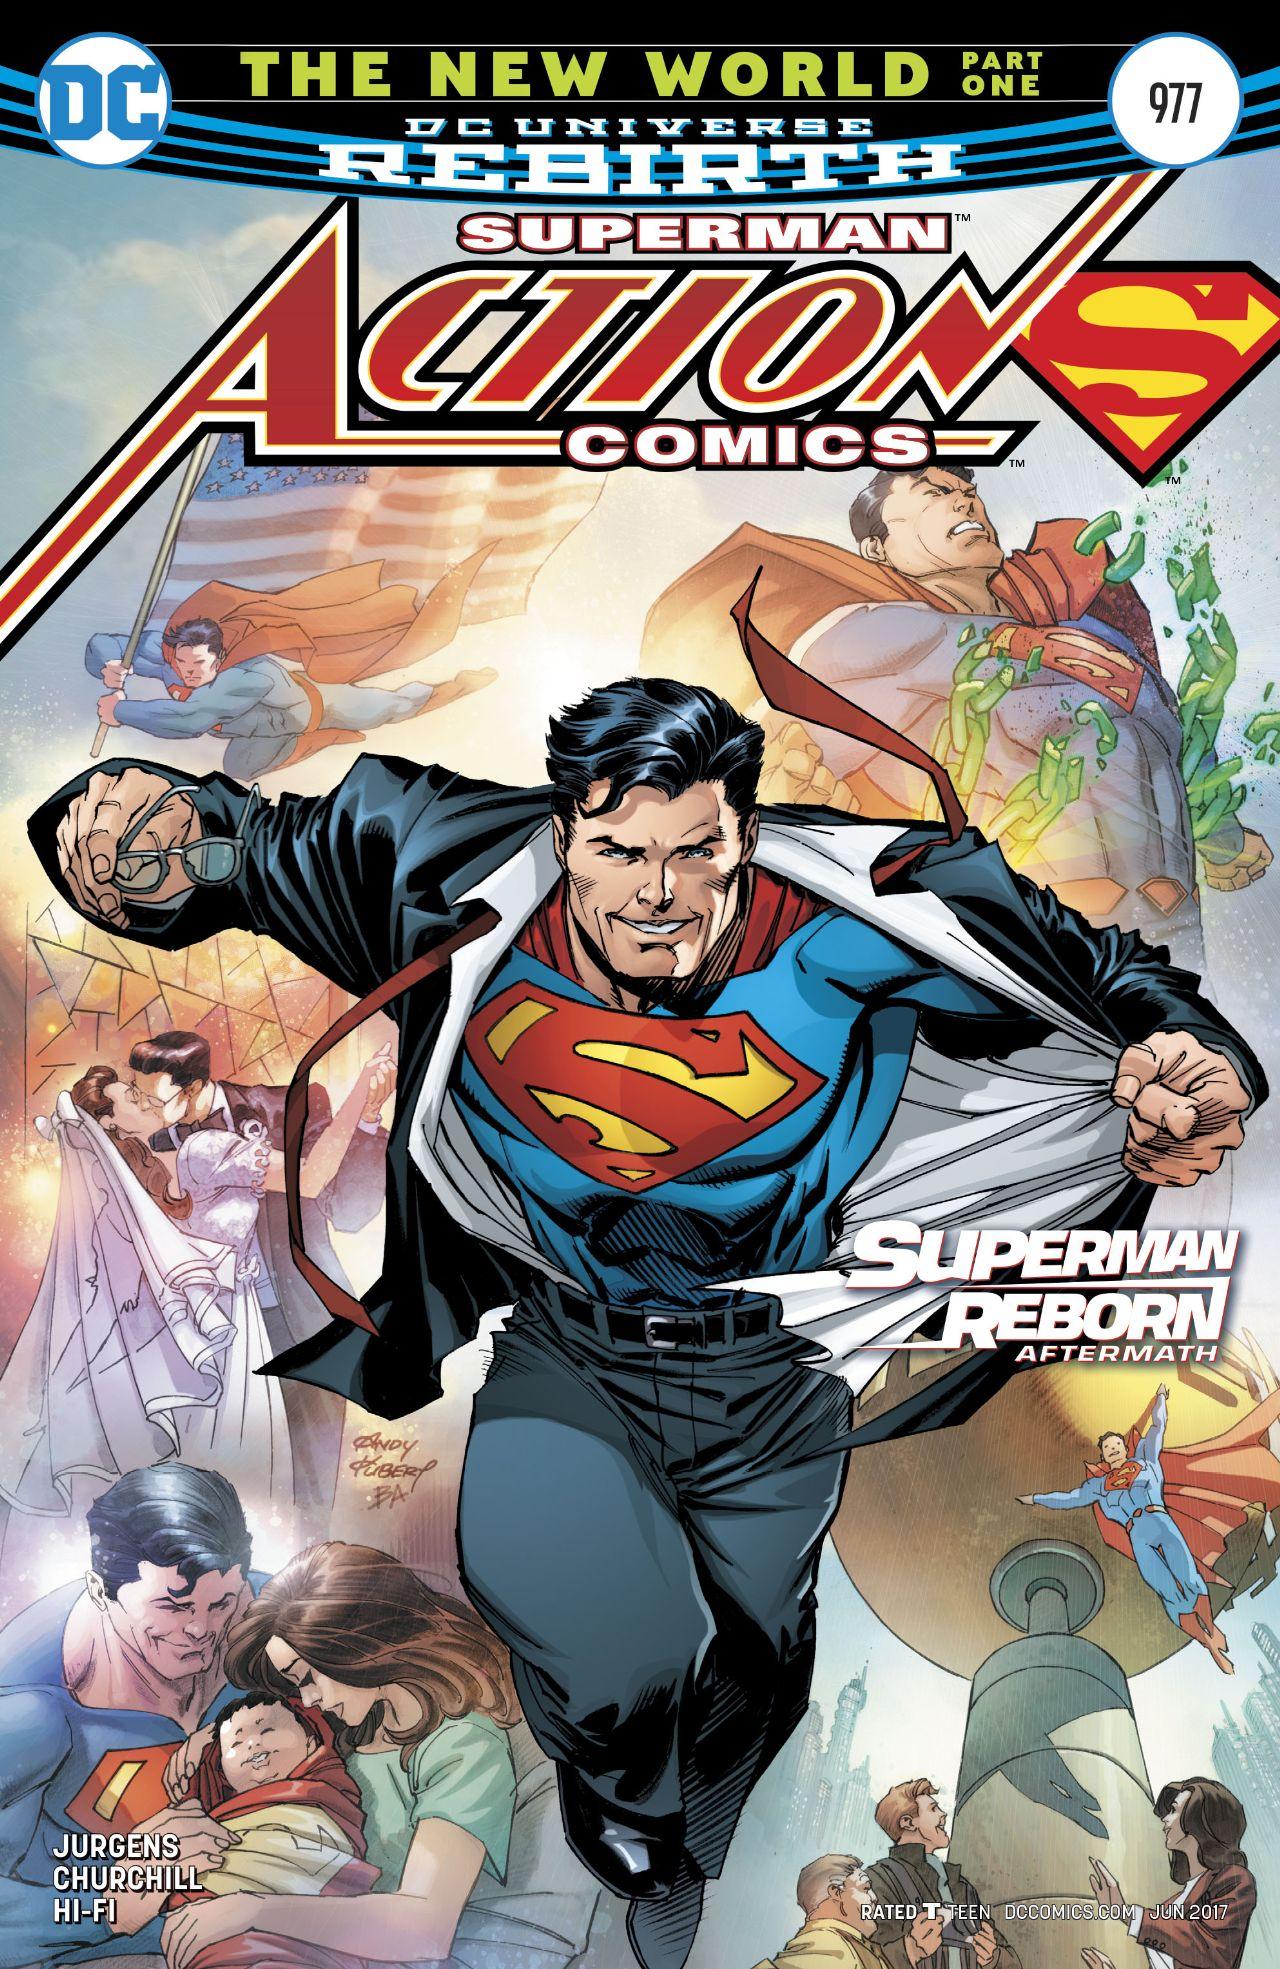 Action Comics Vol. 1 #977